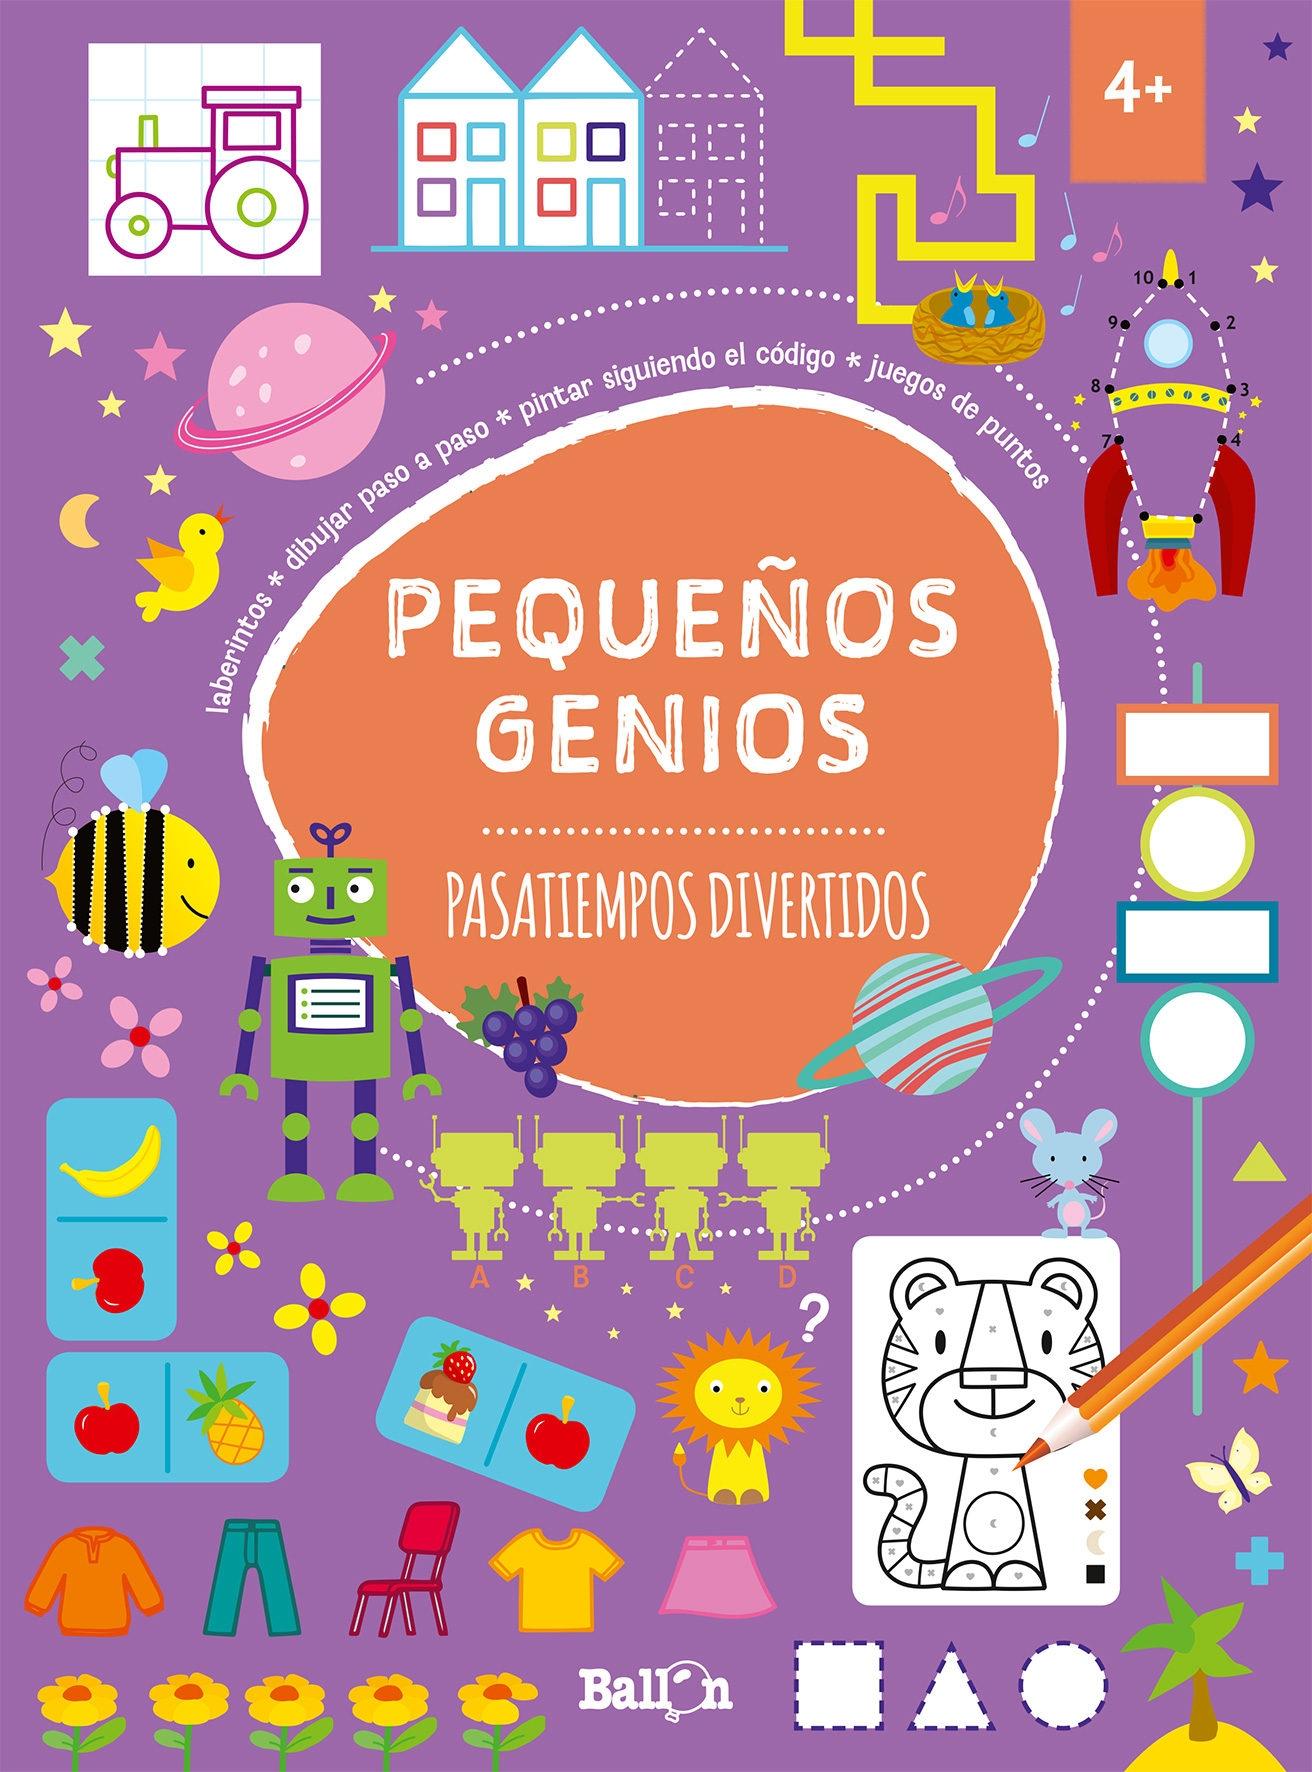 Pequeños Genios - Pasatiempos Divertidos +4 Años "Laberintos, Dibujar Paso a Paso, Pintar Siguiendo el Código, Juegos de Puntos". 